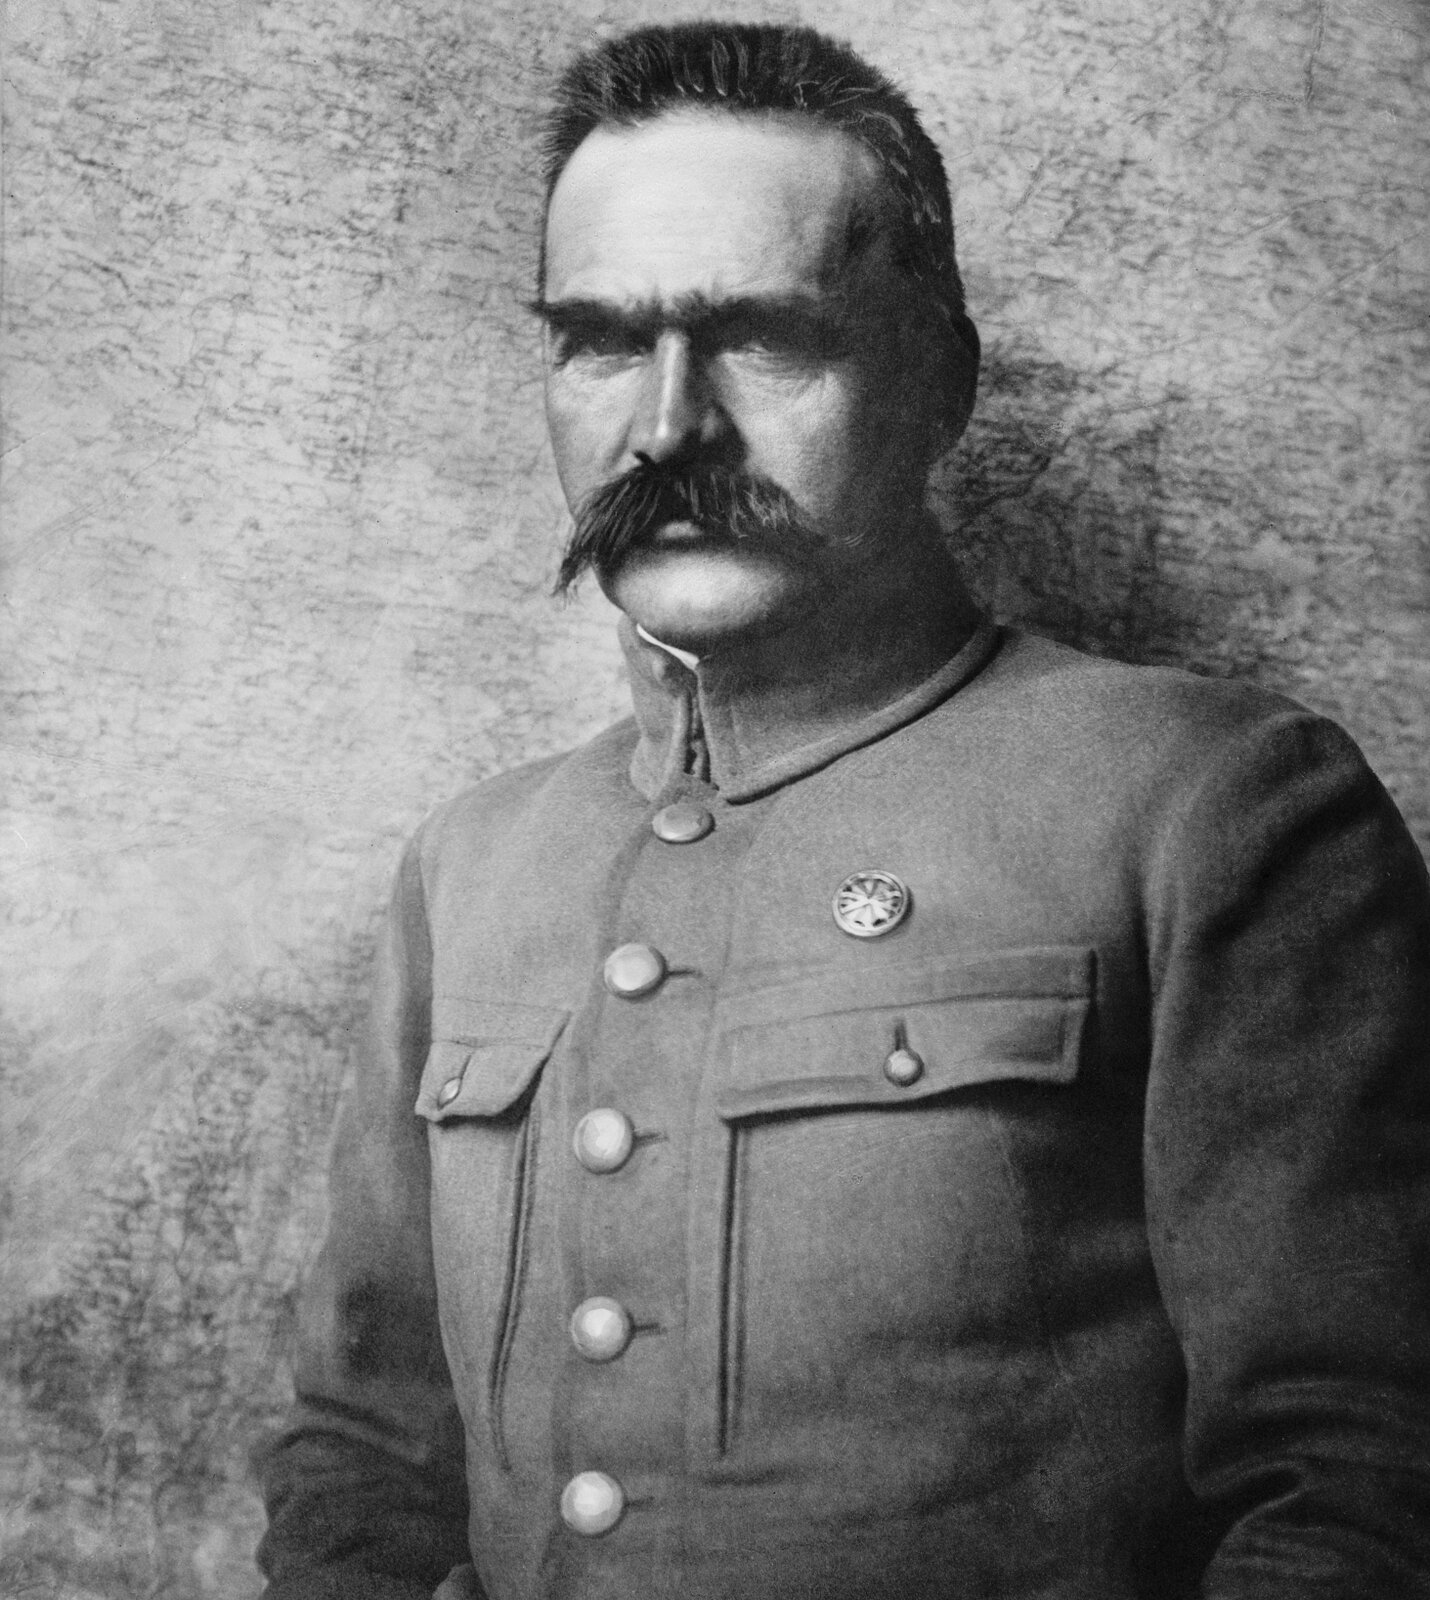 Józef Piłsudski Józef Piłsudski Źródło: K. Pęcherski, 1910–1920, fotografia archiwalna, domena publiczna.